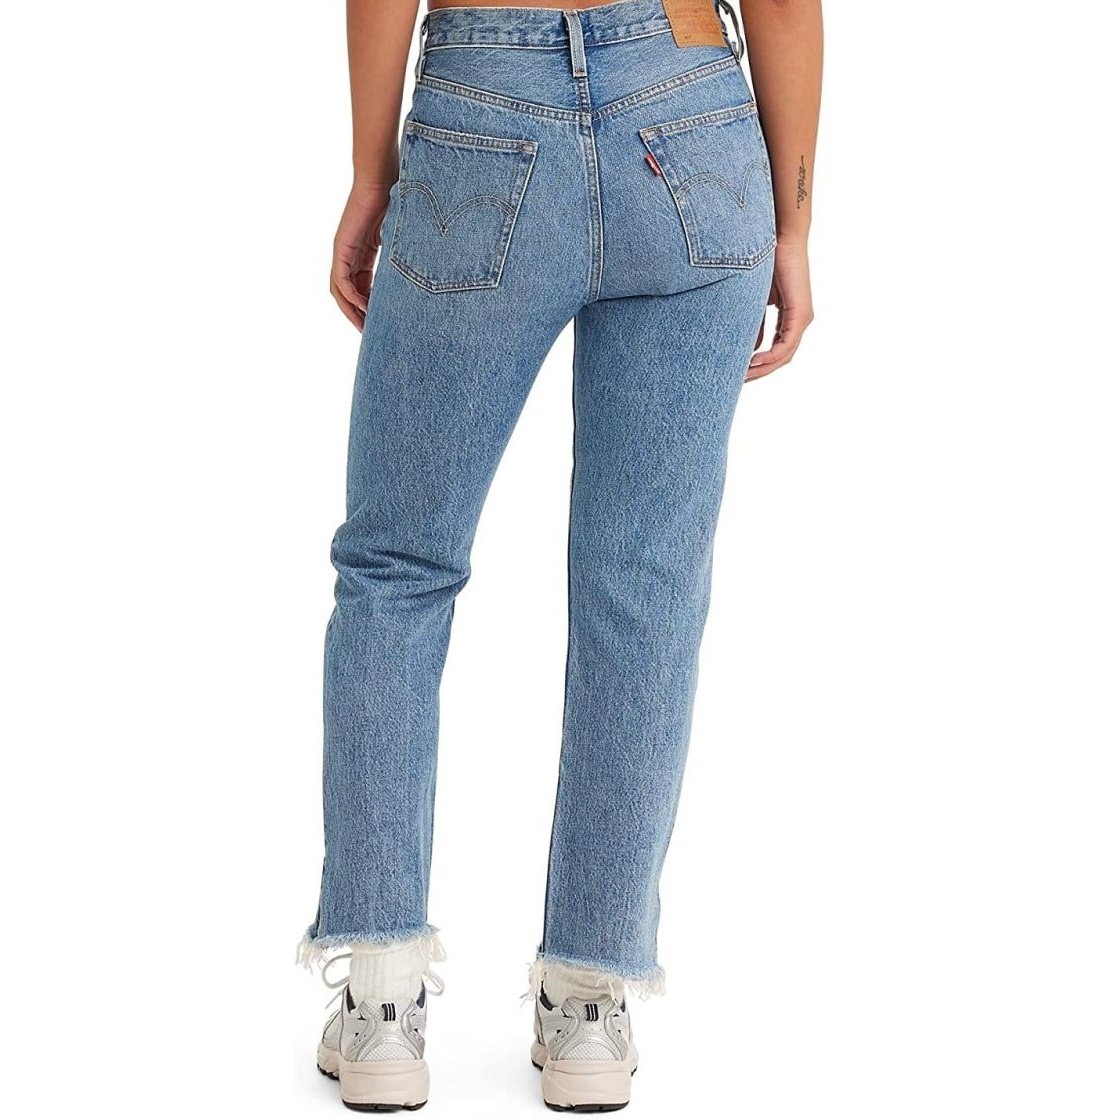 Levi’s Women’s Jeans 501 Original Cropped Jeans 2100022364 - Levi's